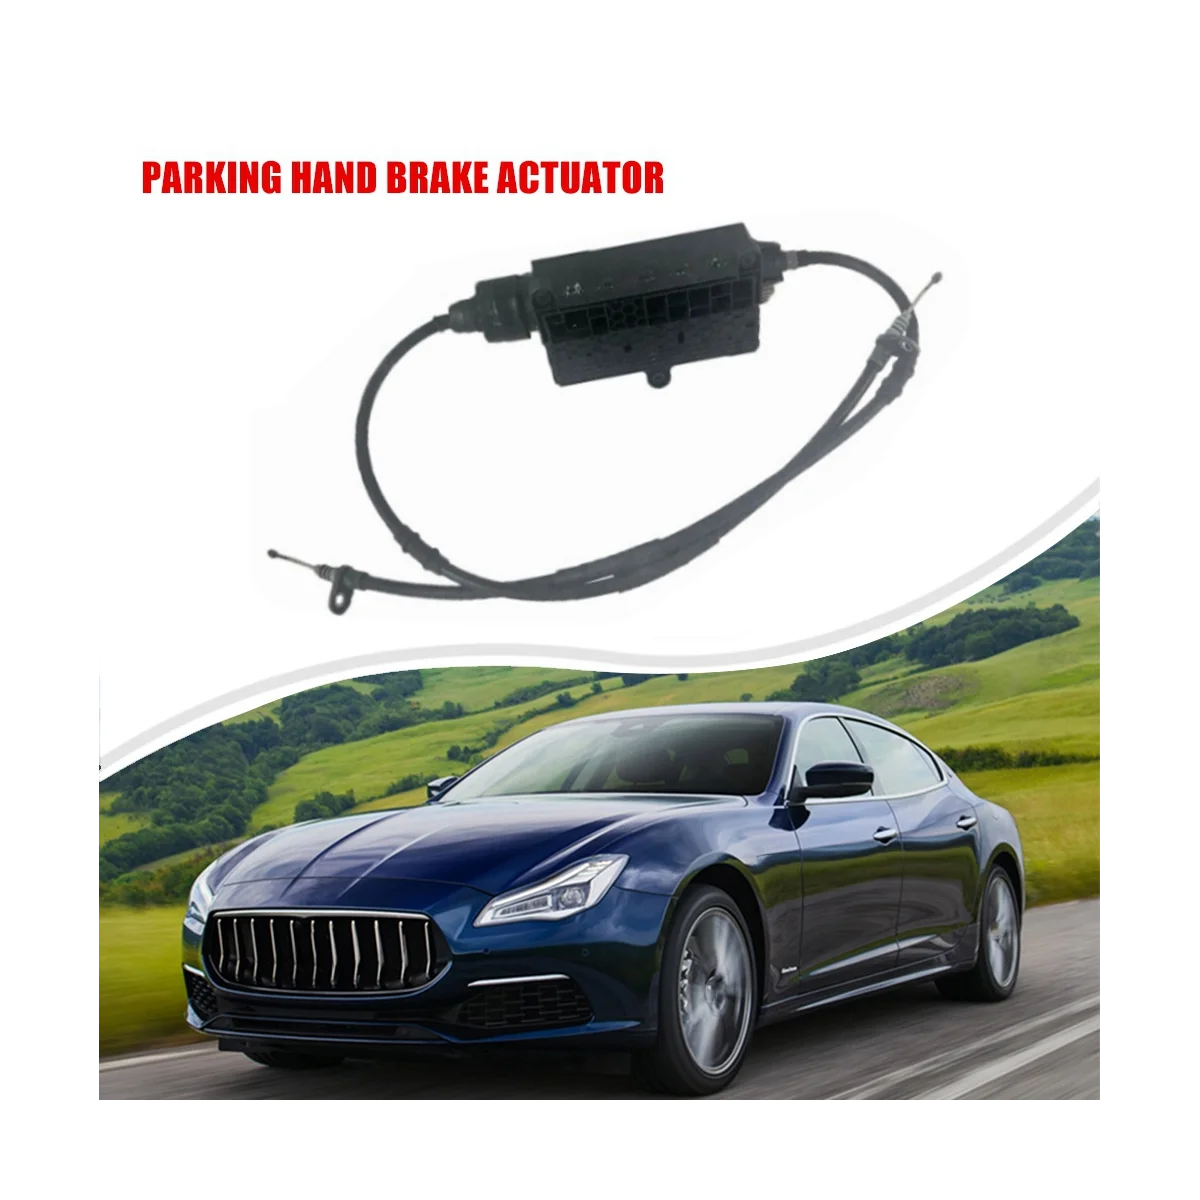 

670030887 Car Parking Brake Electronic Actuator Parking Hand Brake Actuator for Maserati Quattroporte Ghibli